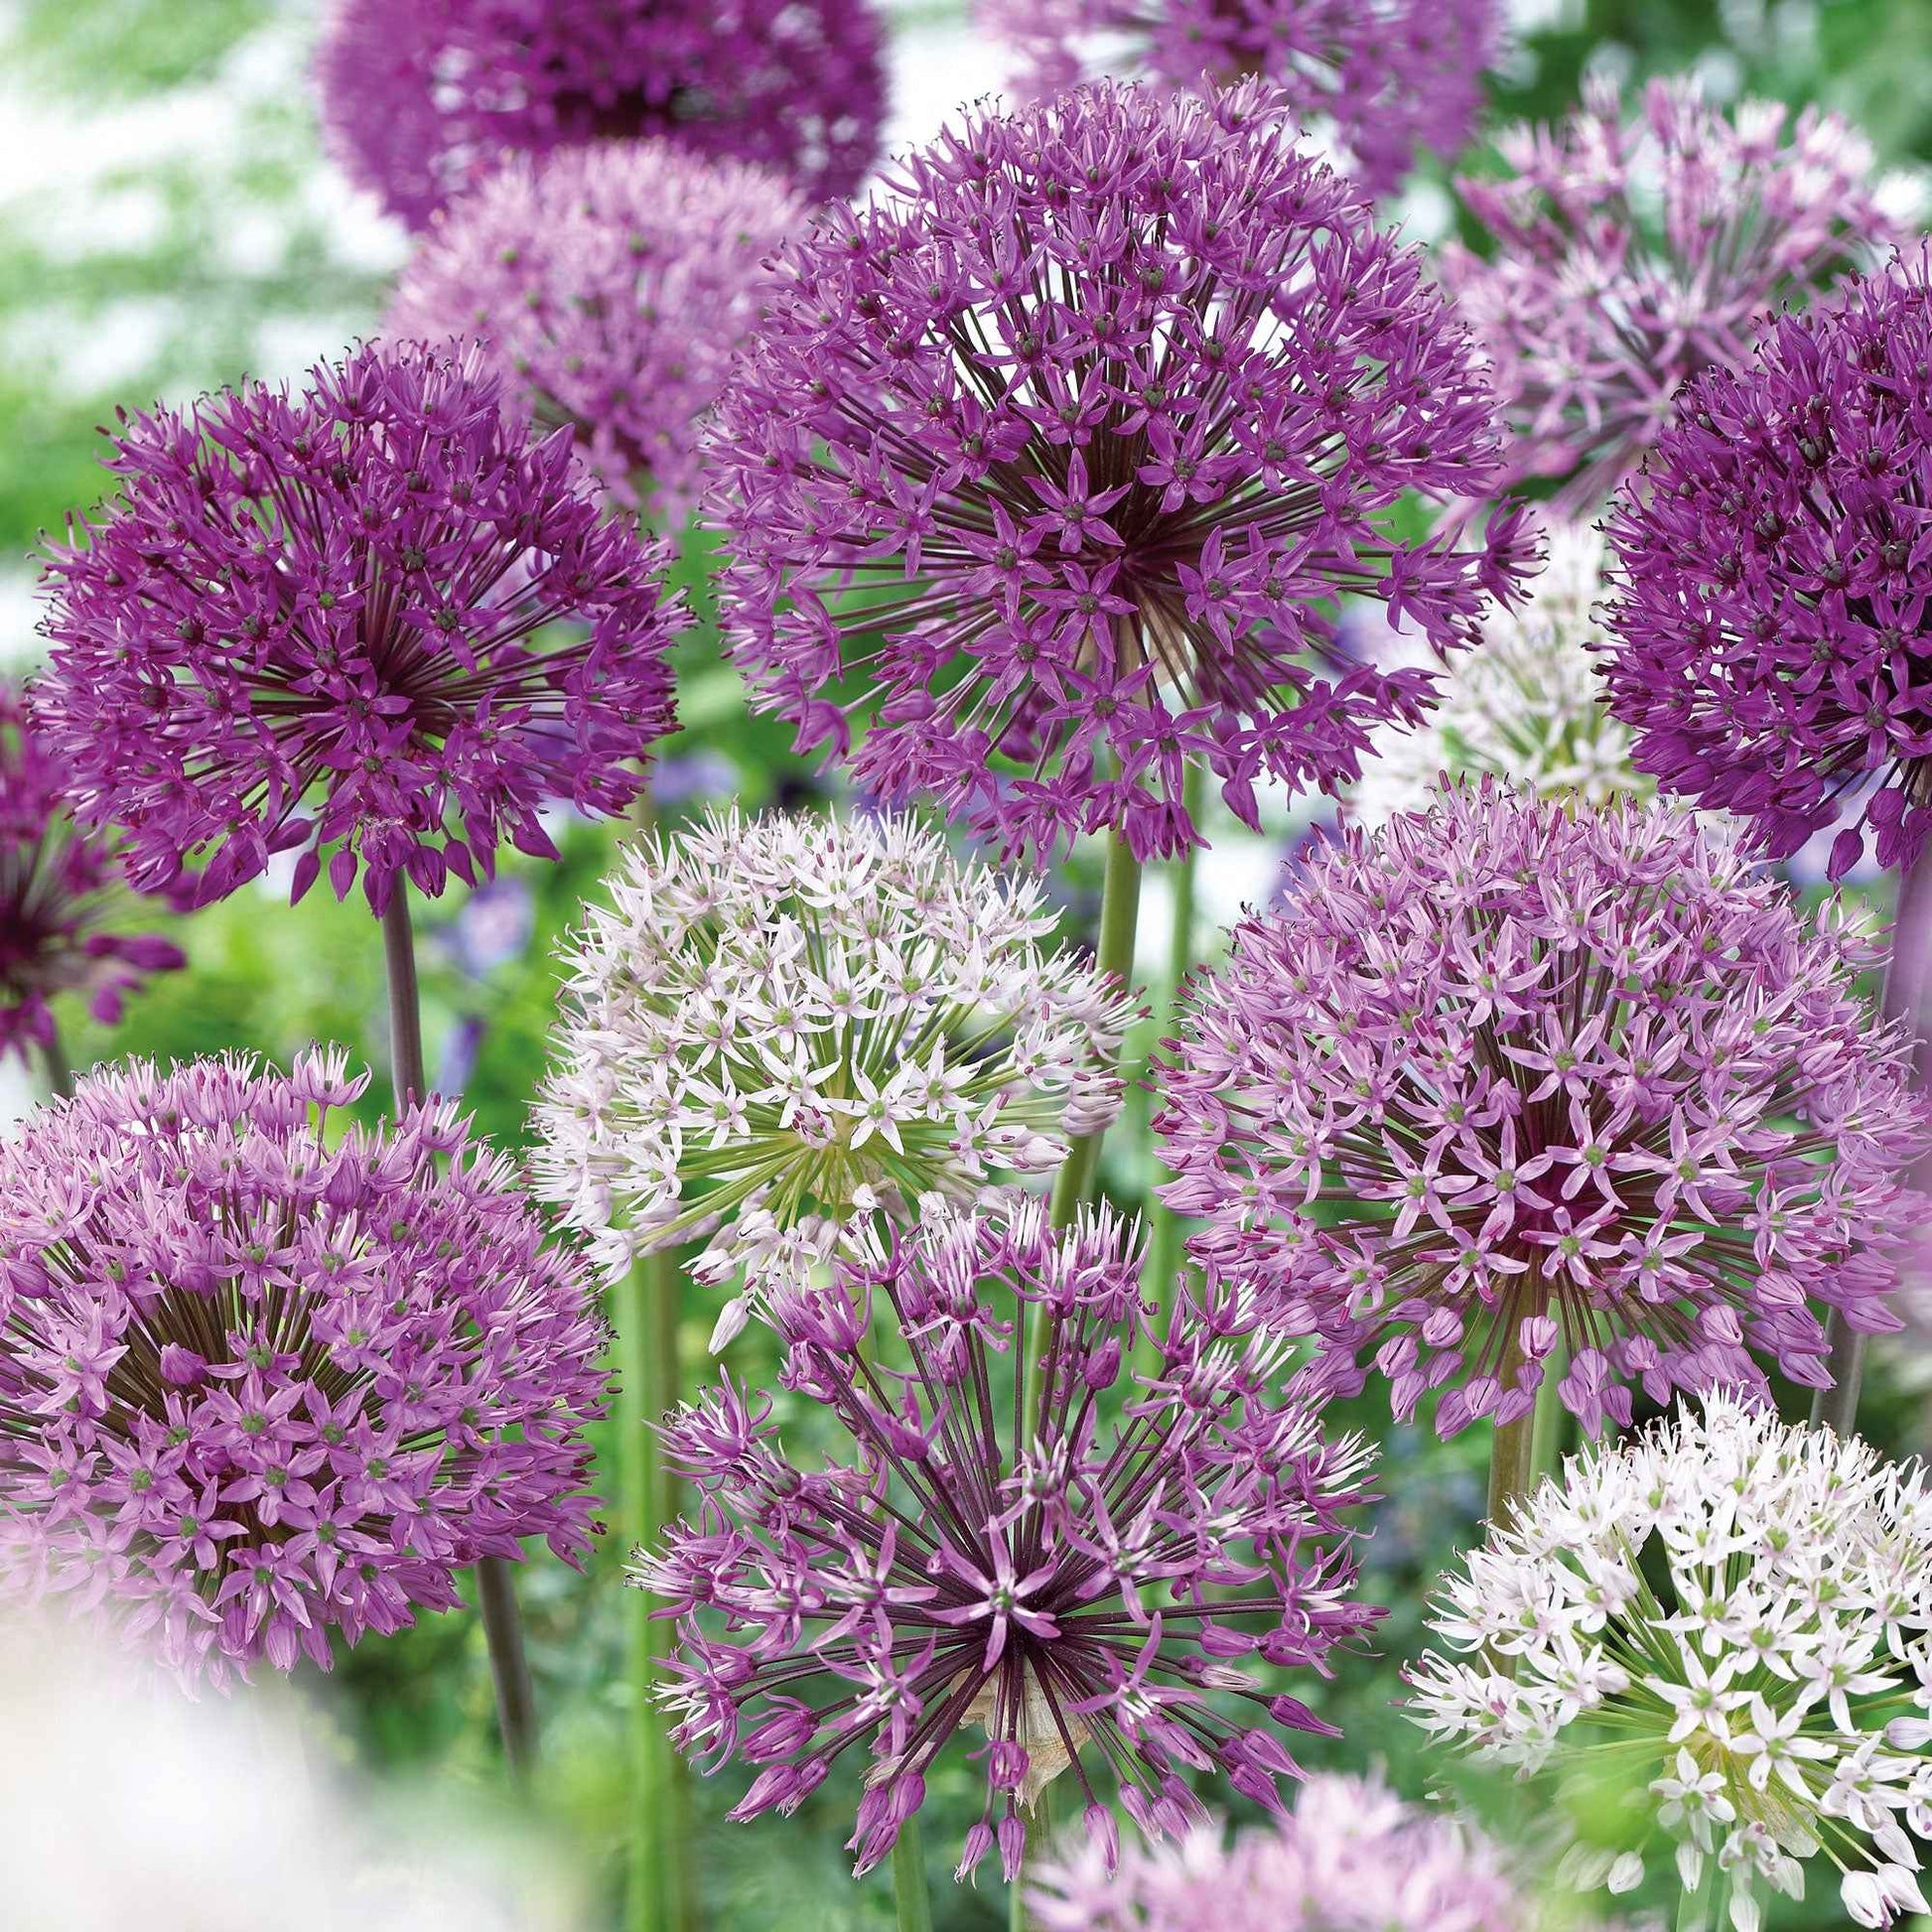 16x Zierzwiebel Allium 'The Purple Box' lila - Alle beliebten Blumenzwiebeln